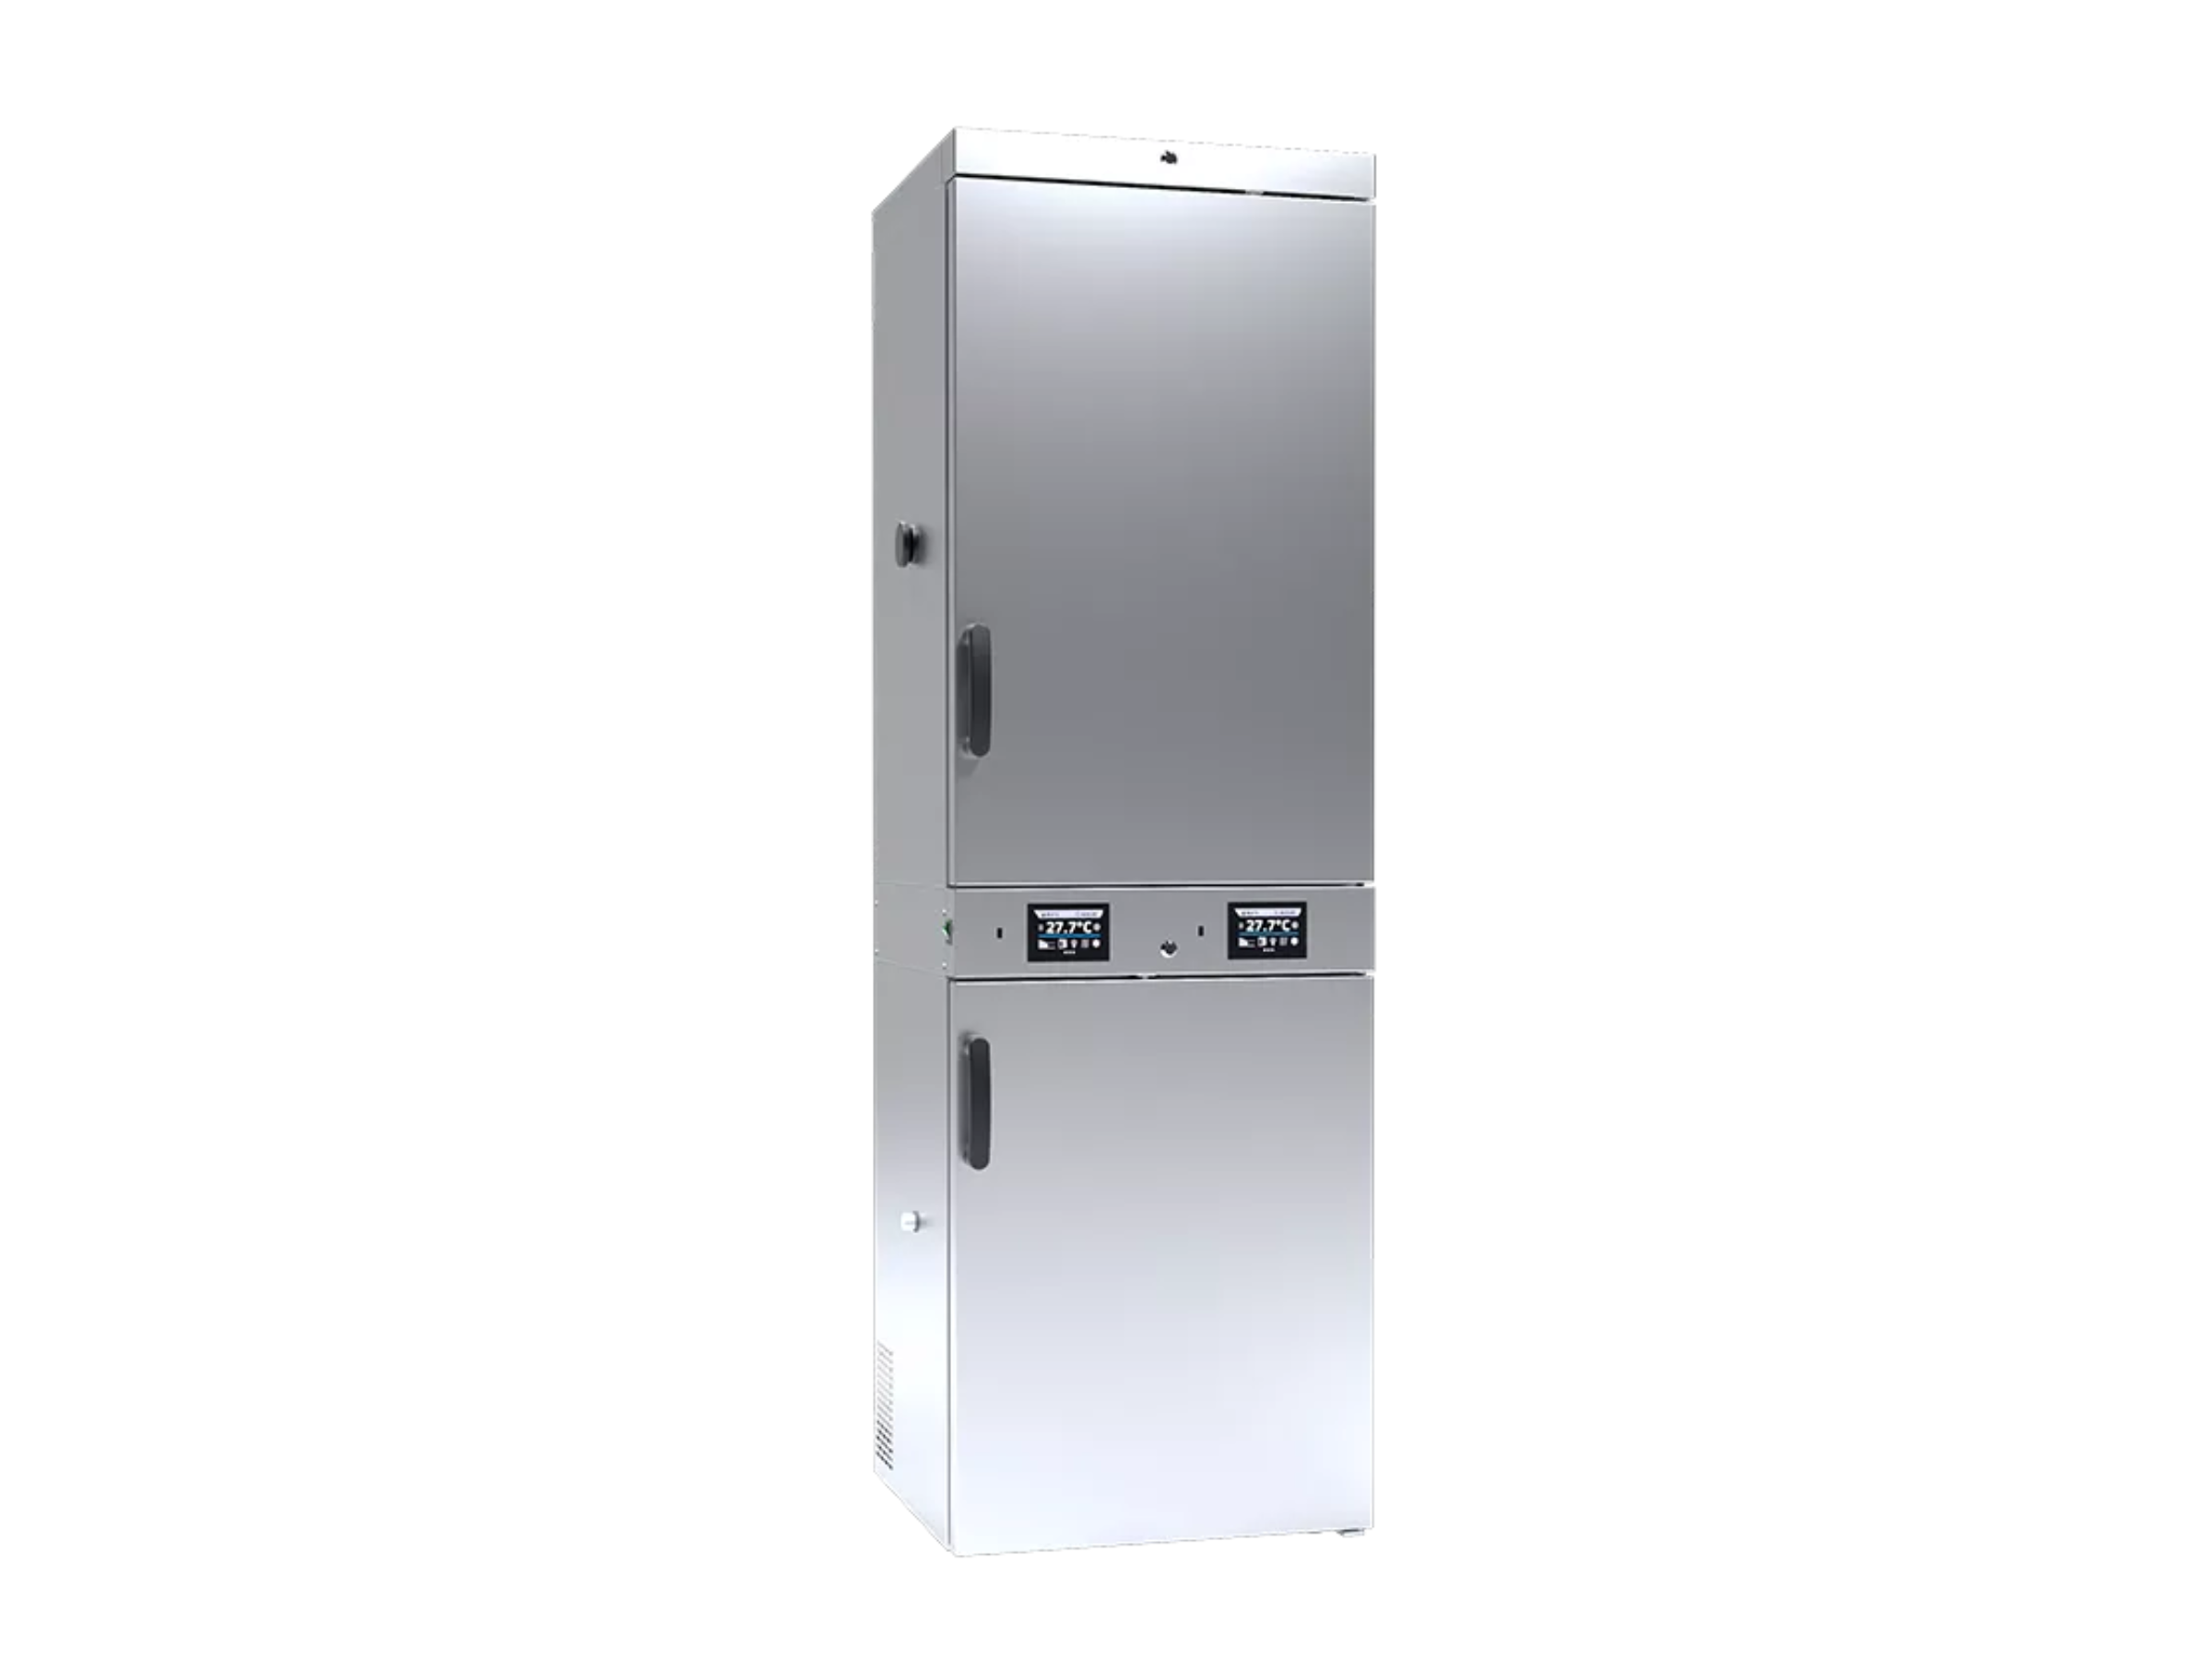 Pol-Eko CHL3/ZLN85 Refrigerator with Freezer